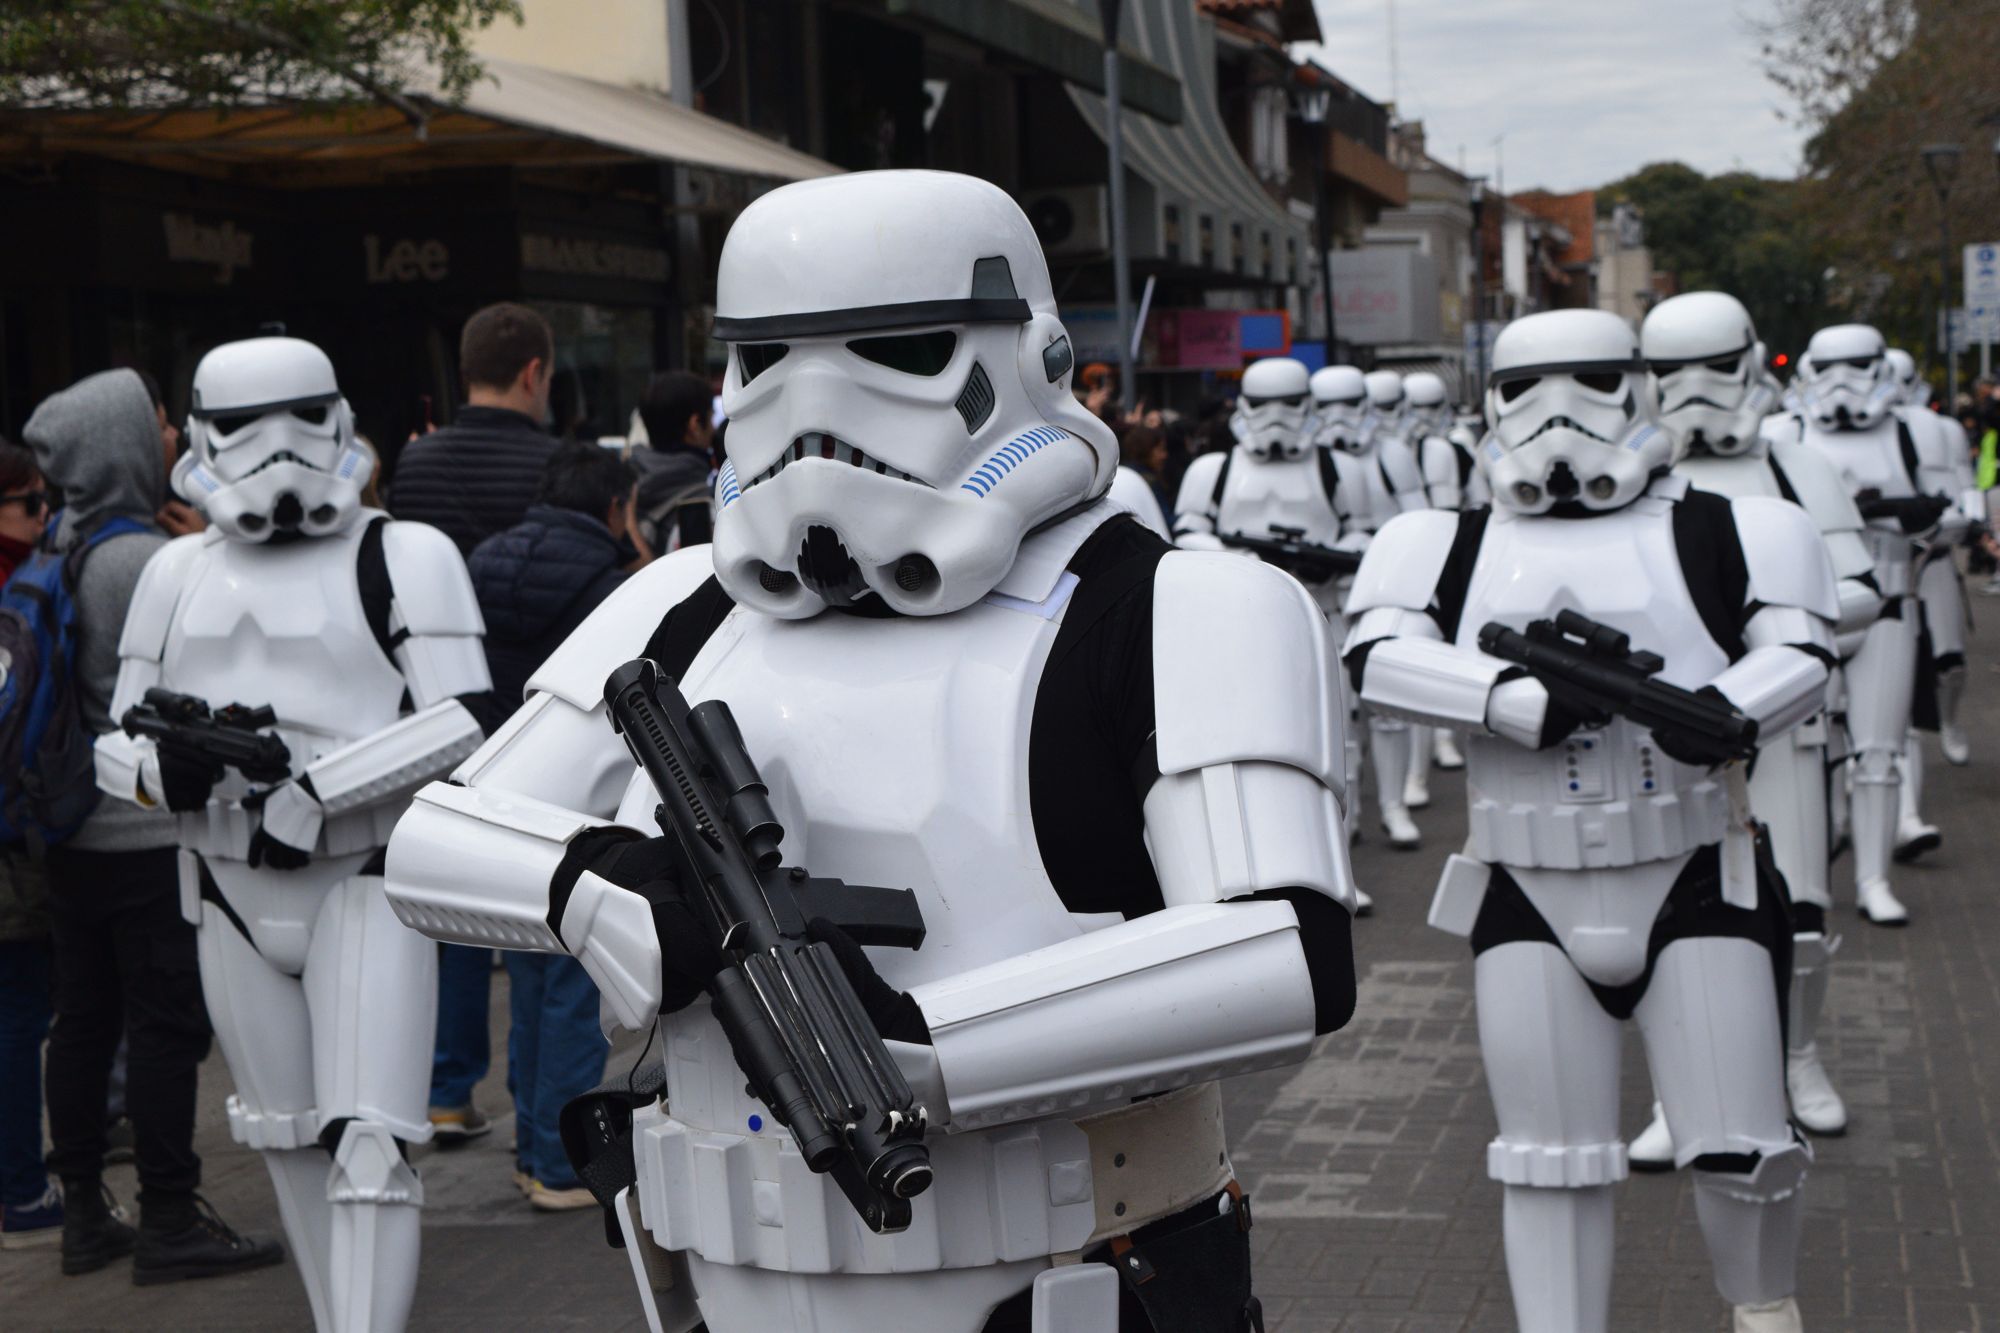 ¡Misión cumplida! Las tropas imperiales y soldados rebeldes de Star Wars recaudaron más de 3 mil litros de leche